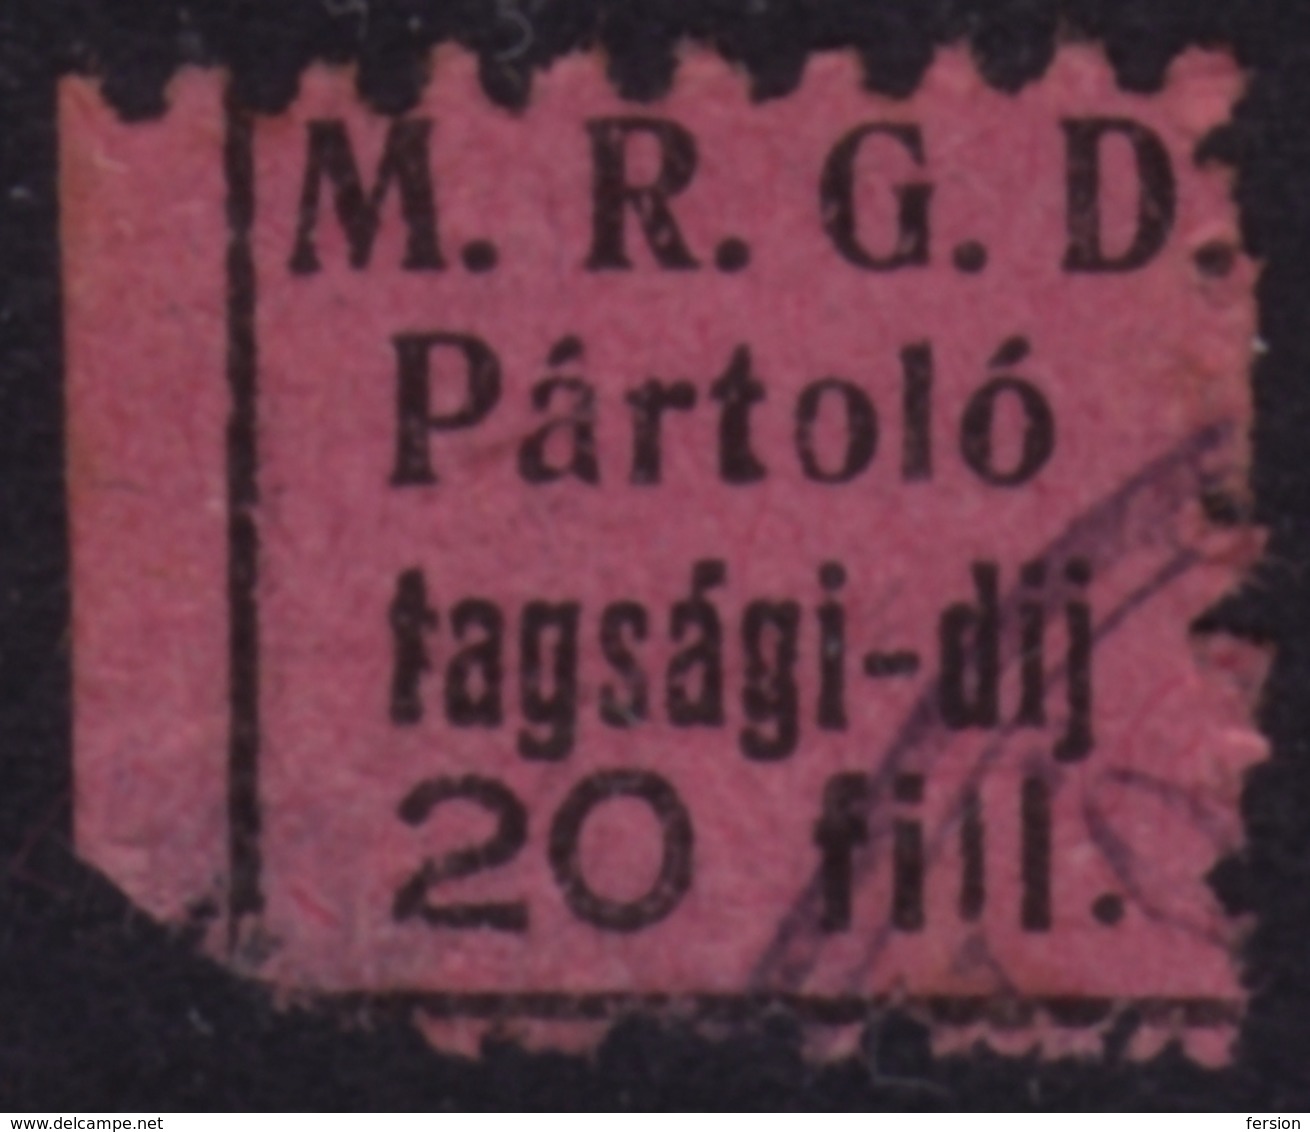 M. R. G. D. / M.R.G.D. - Member Label / Vignette / Cinderella - Used (damages) - HUNGARY - Officials